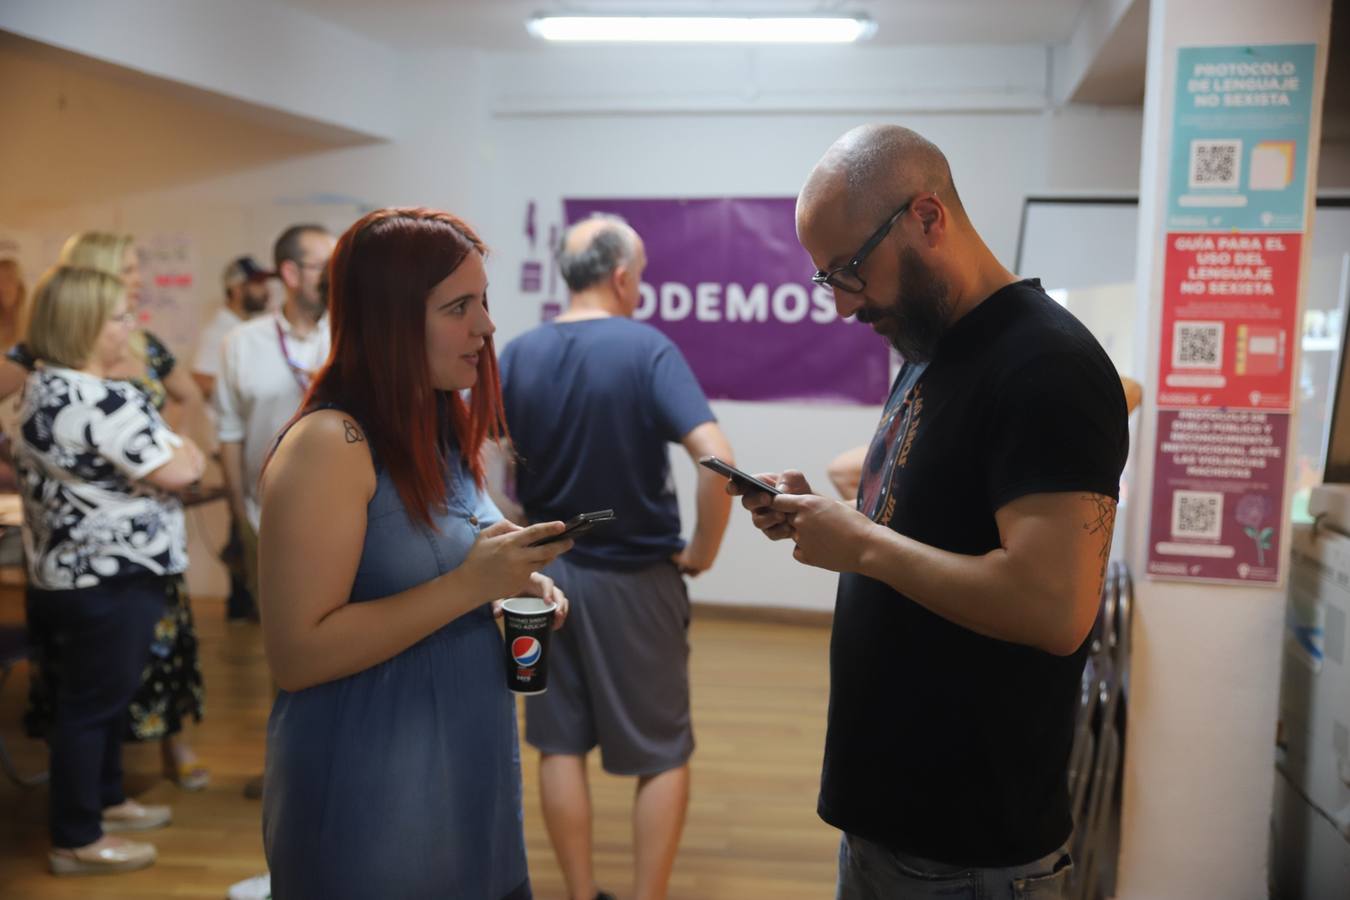 La noche electoral de Podemos Córdoba, en imágenes